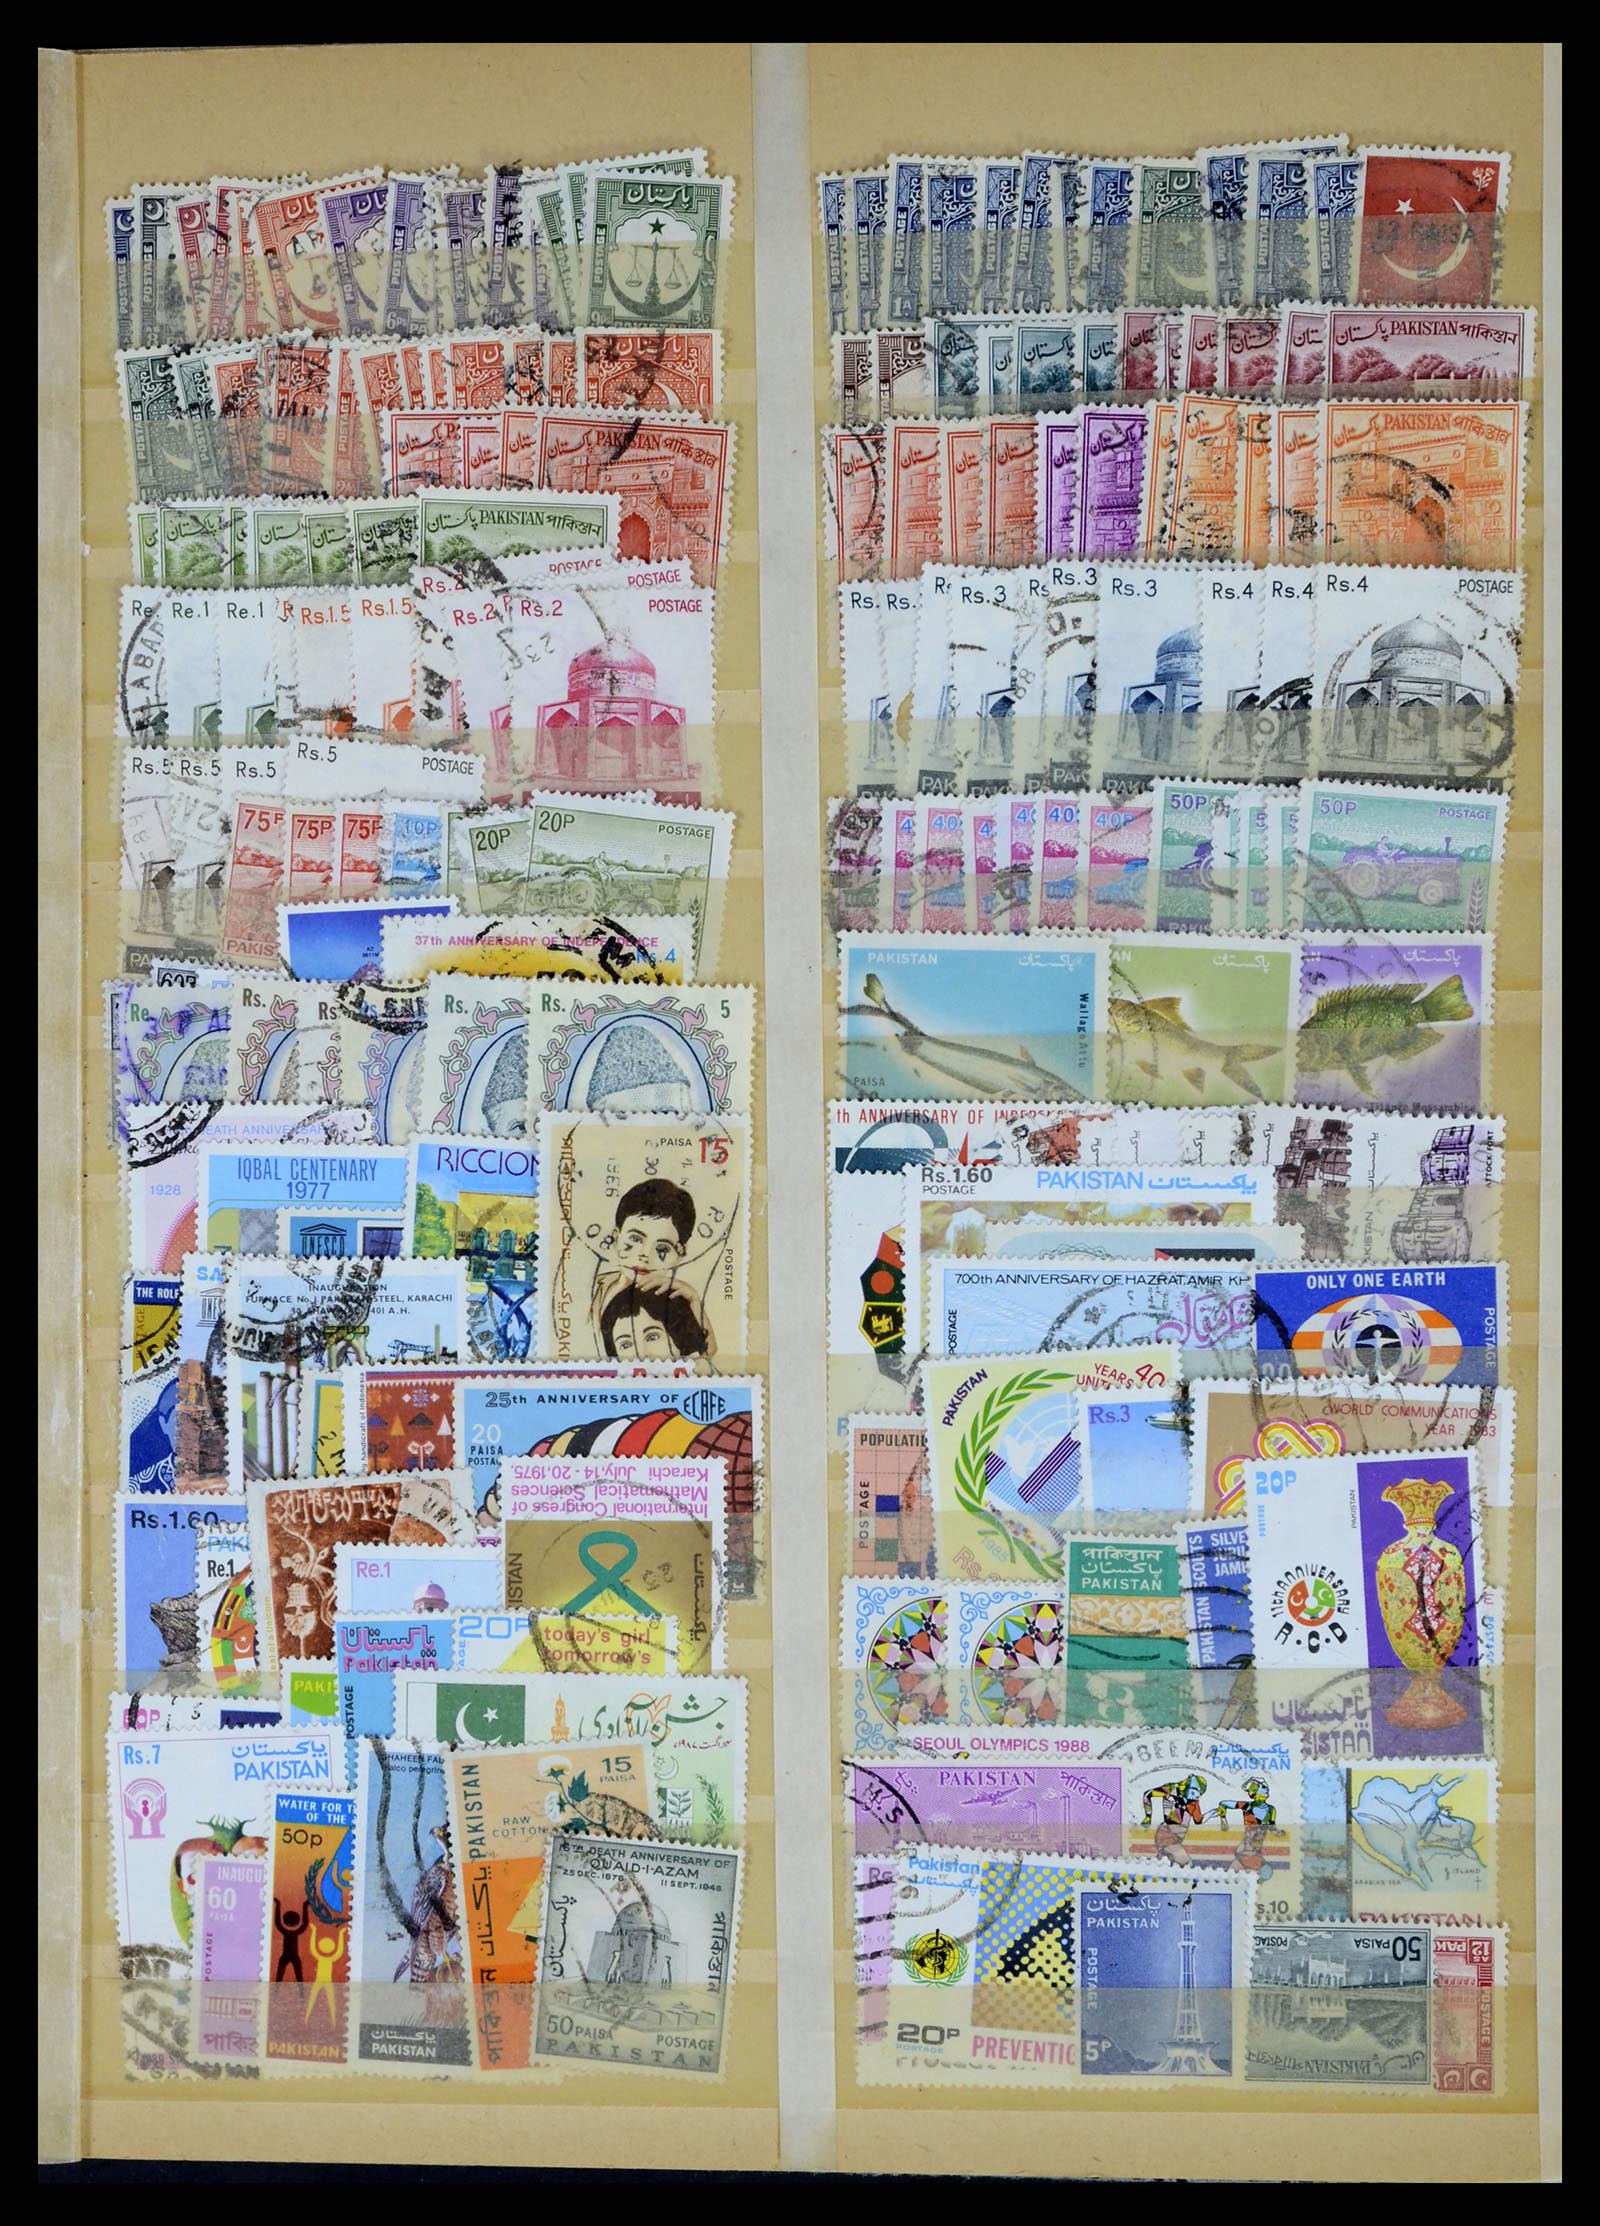 37619 332 - Stamp collection 37619 Pakistan/Bangladesh 1947-2000.